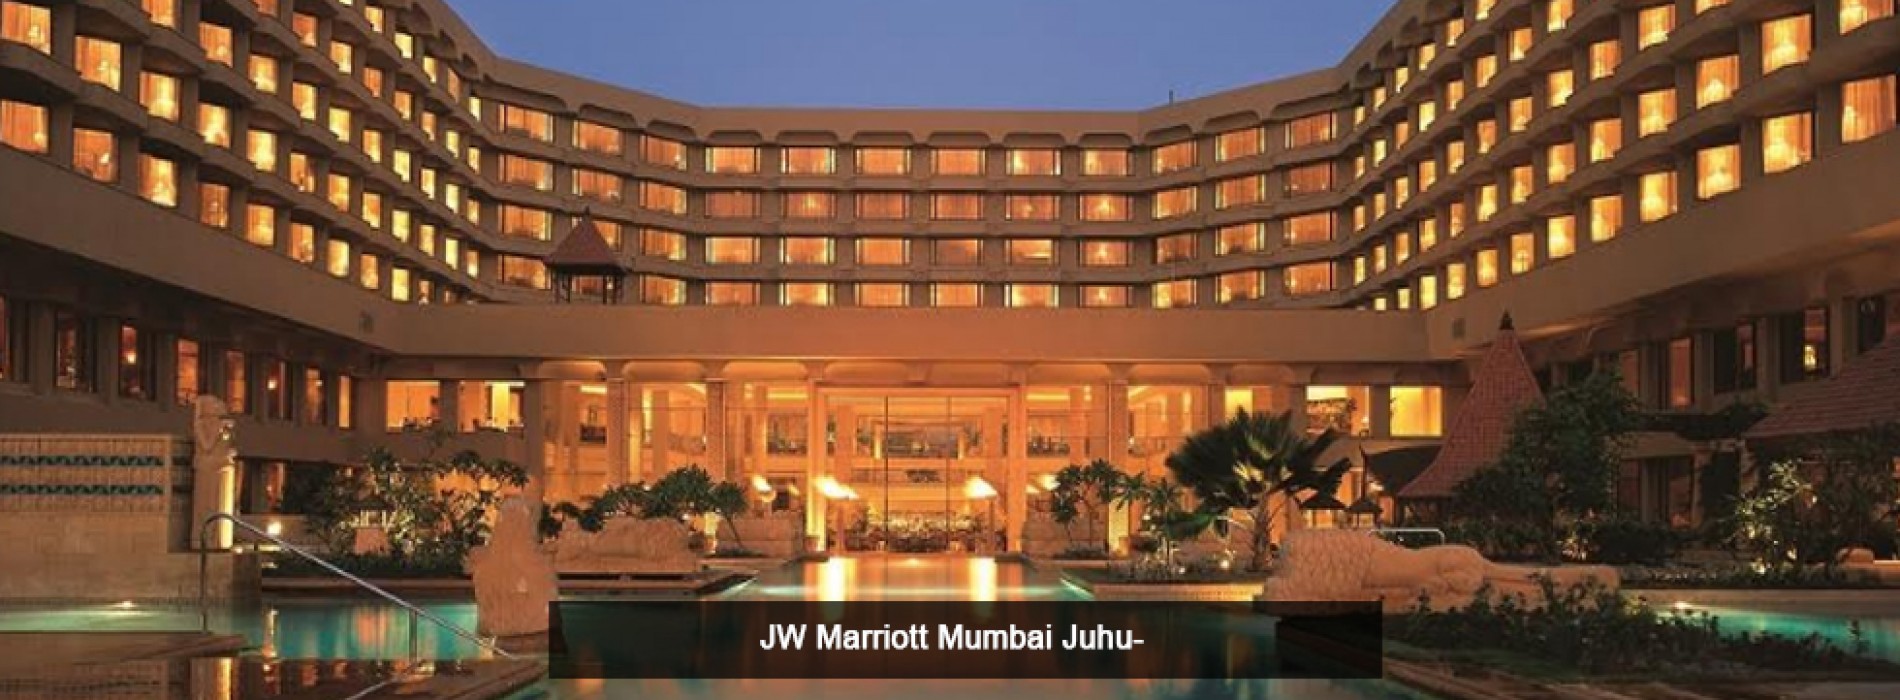 A luxurious seaside getaway awaits you at JW Marriott Mumbai Juhu